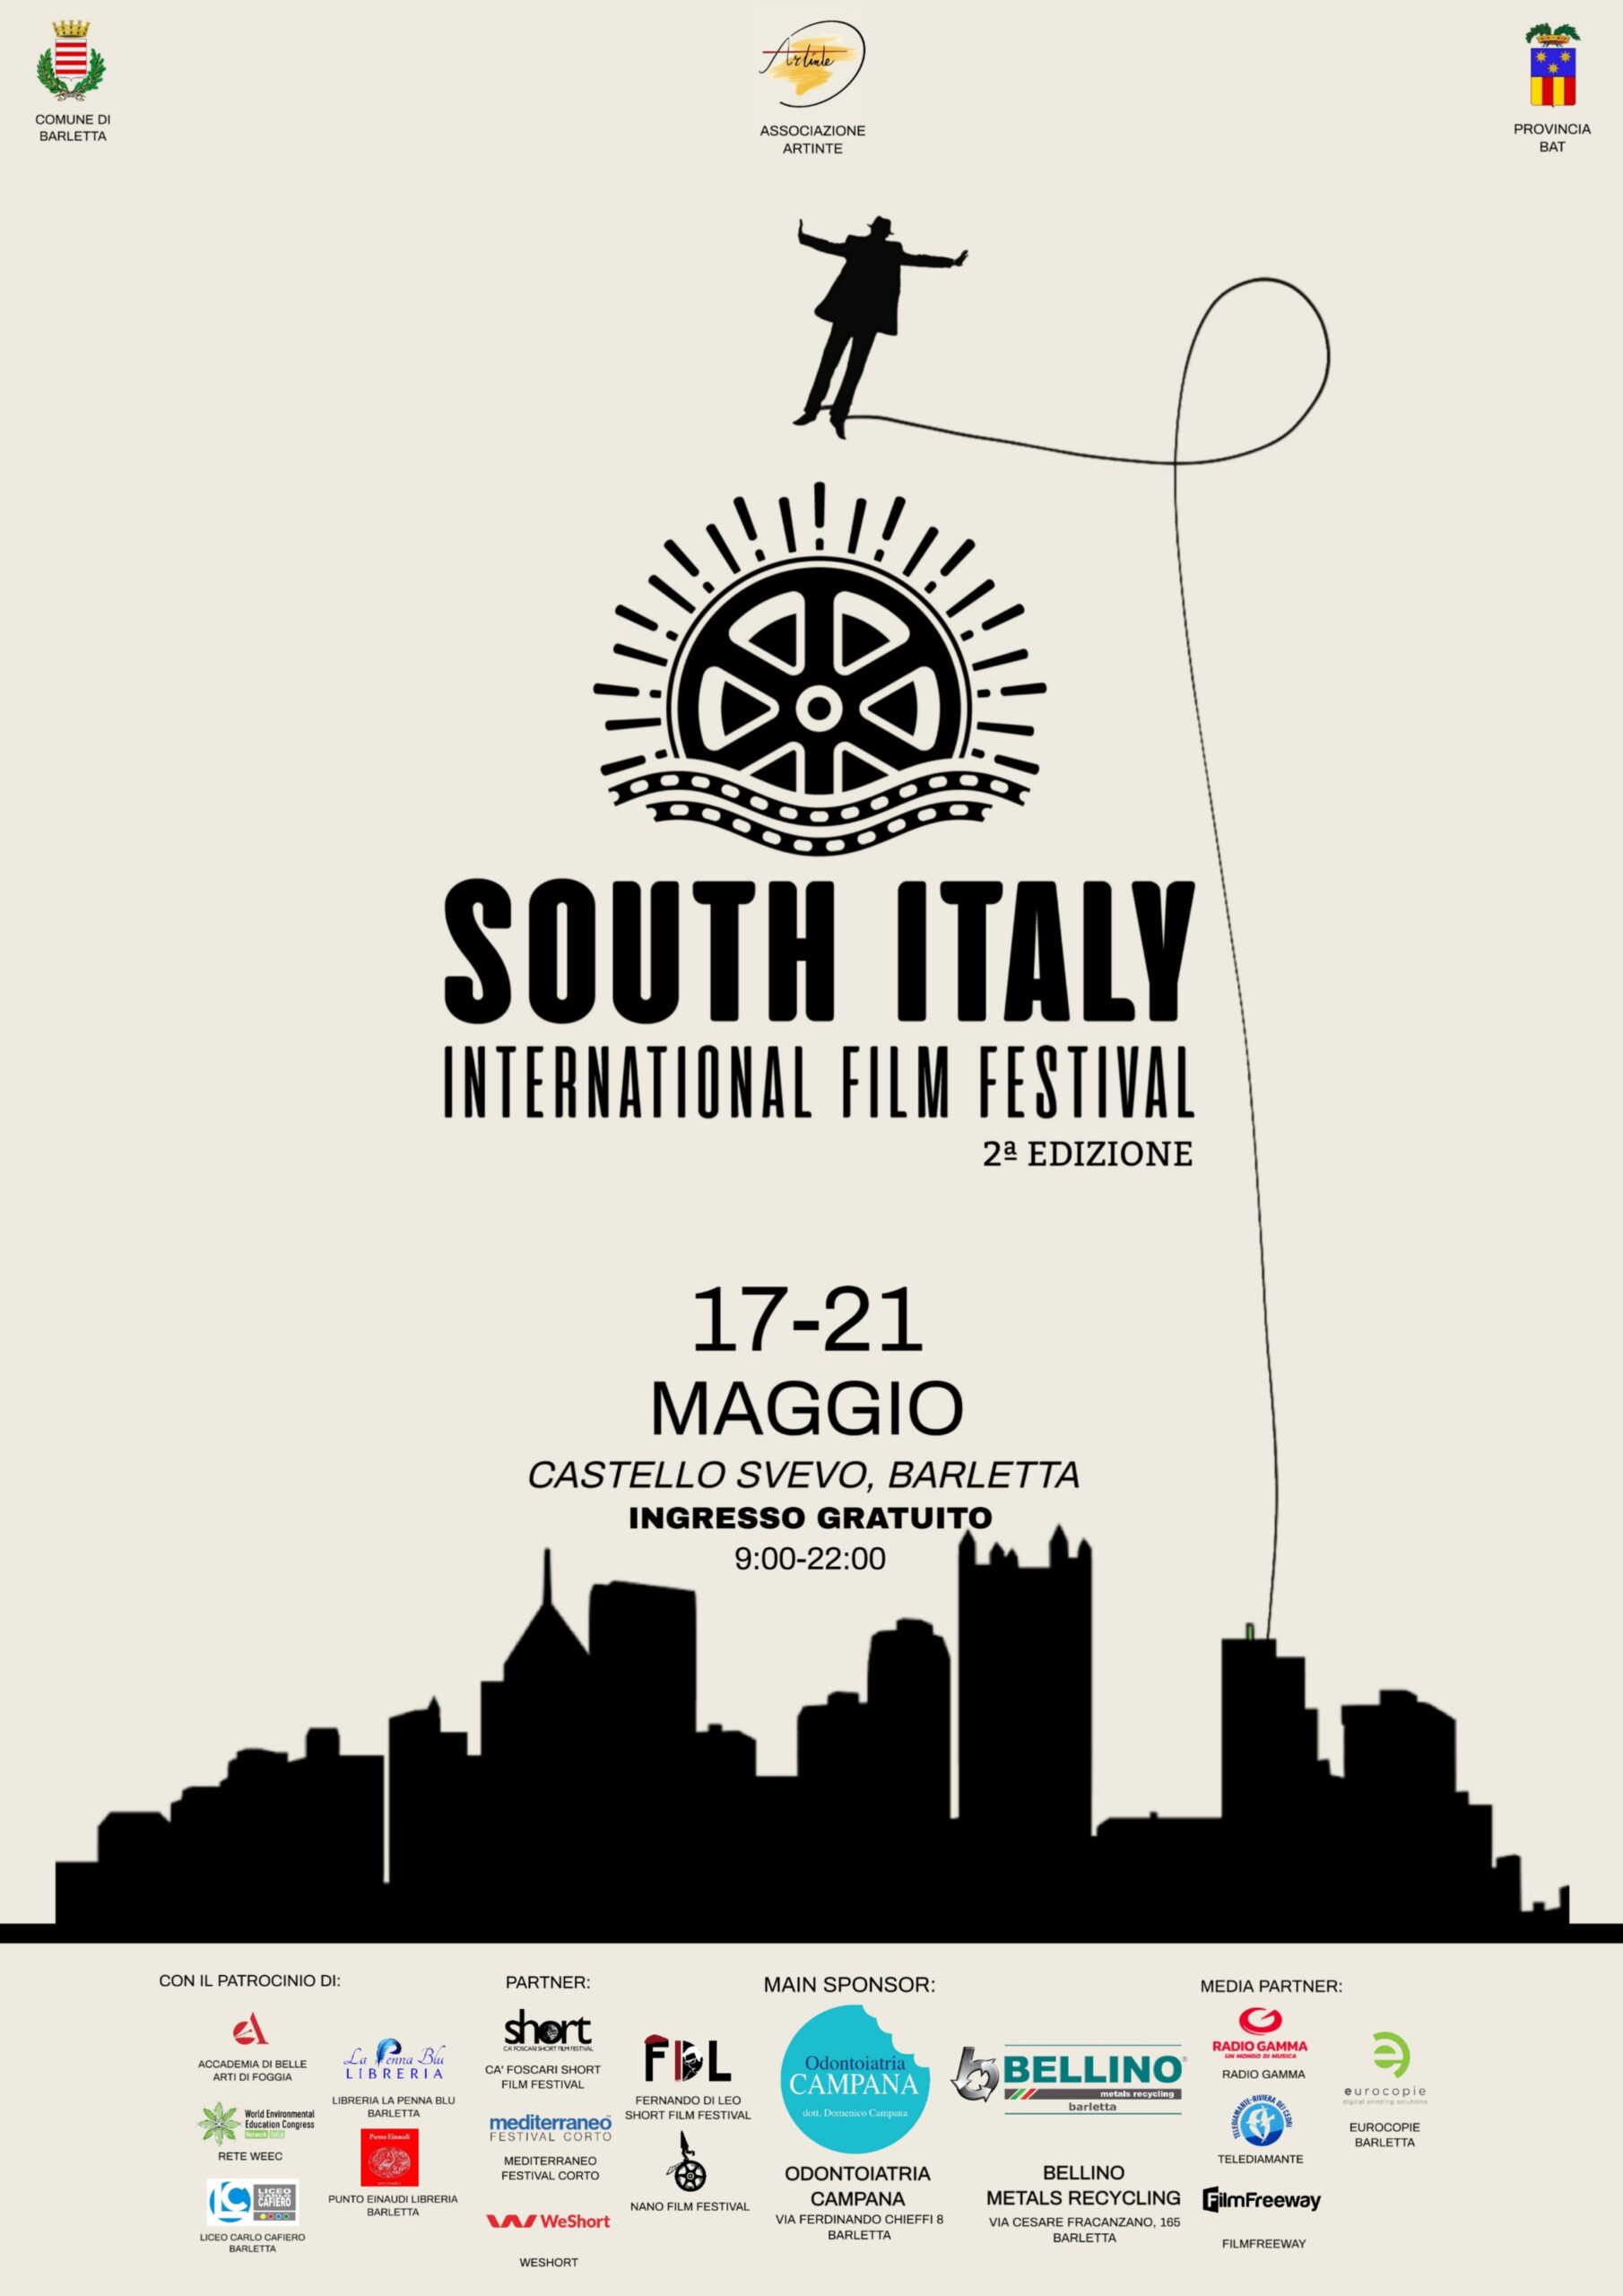 Torna il South International Film Festival, con Luca Verdone presidente della giuria